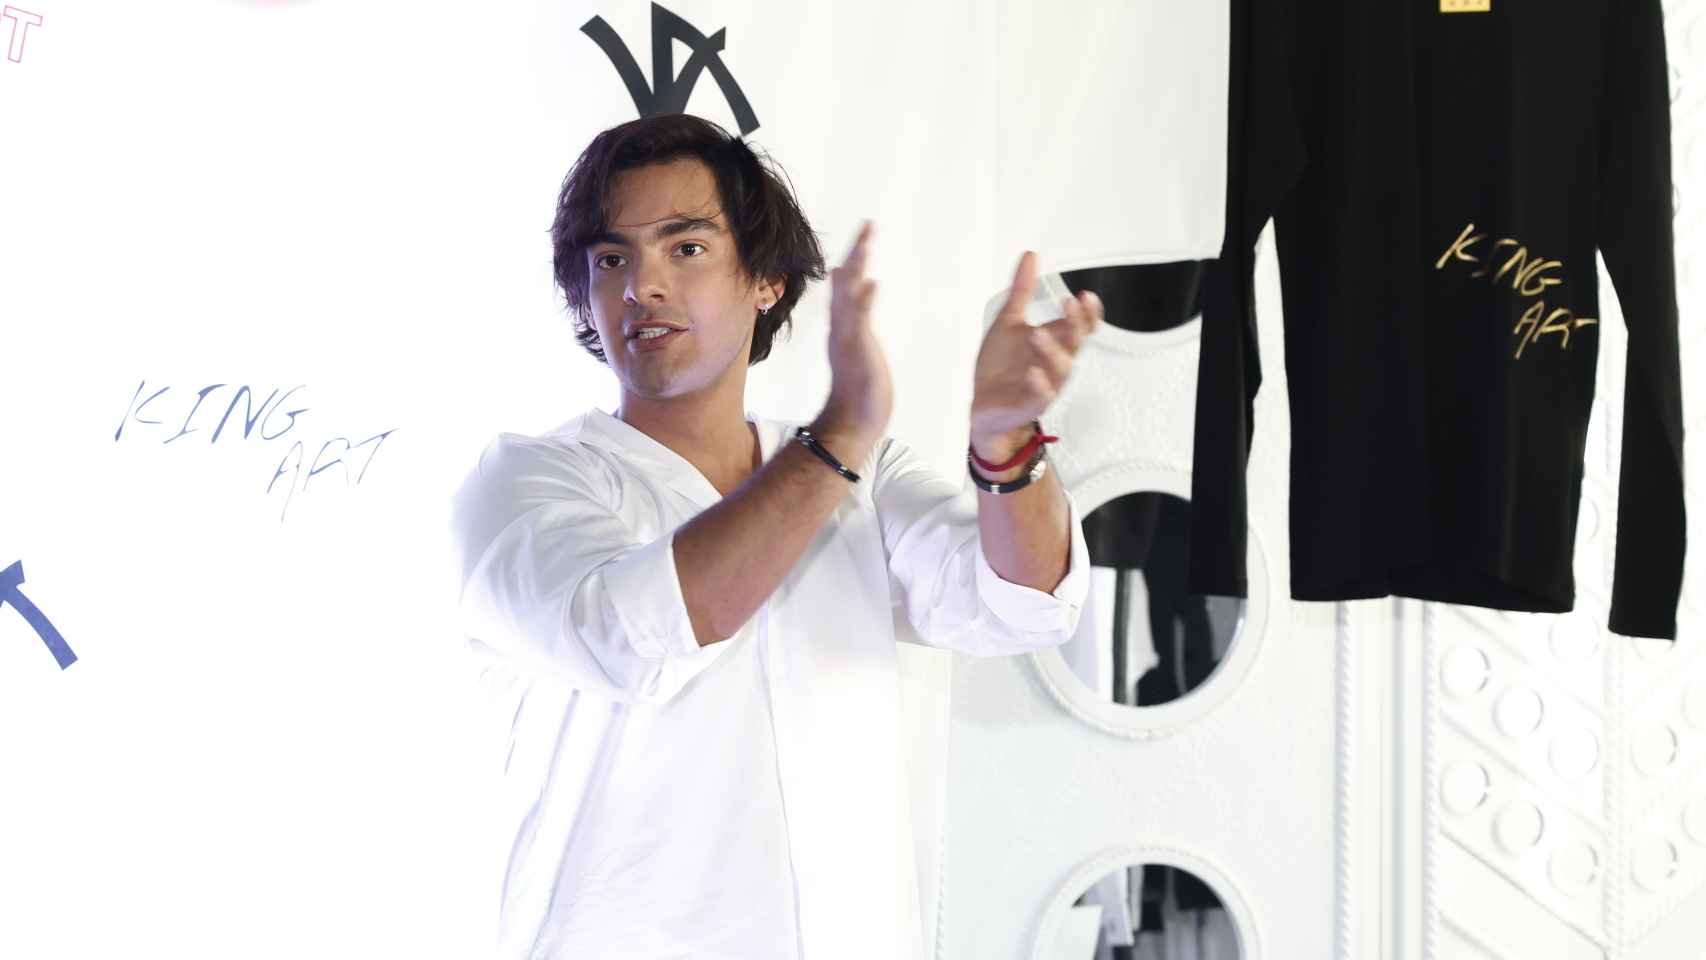 El joven Alejandro Reyes durante la presentación ante los medios de su firma de ropa, el pasado 17 de agosto, en el centro de Madrid.